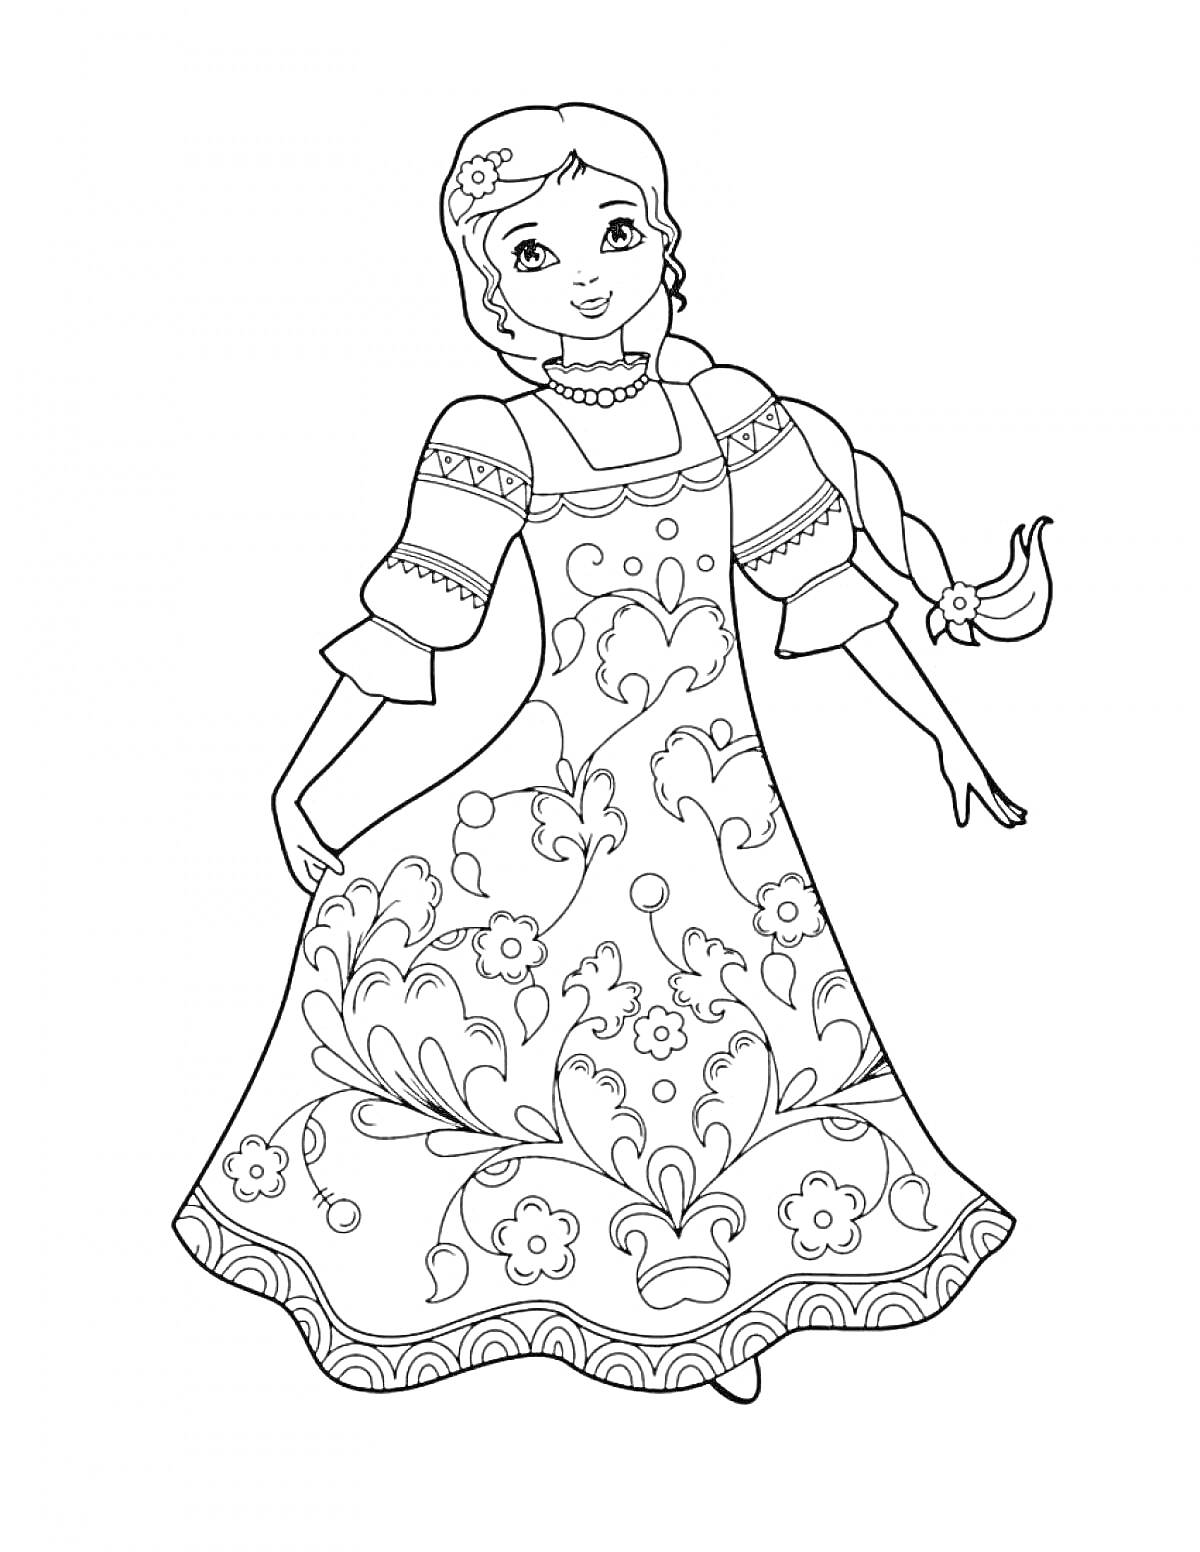 Раскраска Девочка в русском народном костюме, украшенном цветочным узором, коса с ленточкой, рубашка с рукавами-фонариками, сарафан с узором